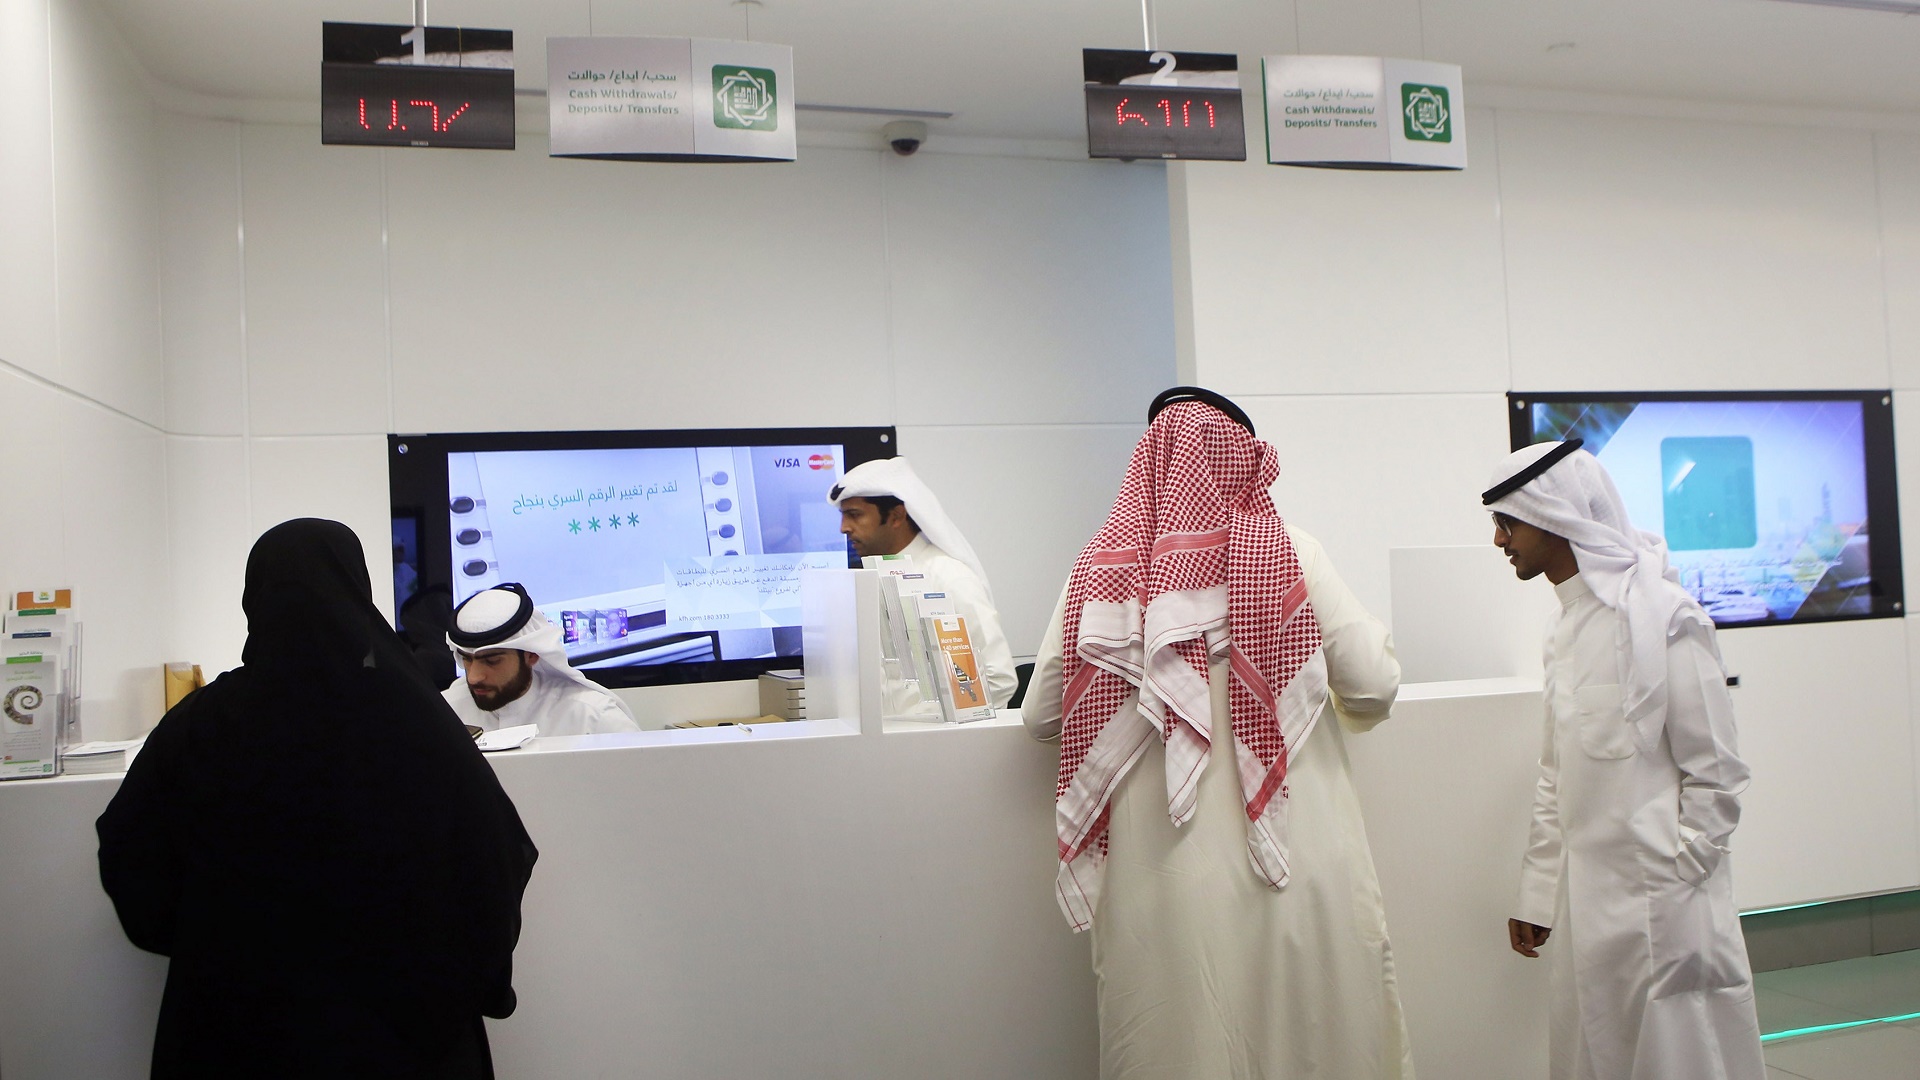 وزارة المالية الكويتية تطلق منصة الكترونية لاستقطاب الخبرات